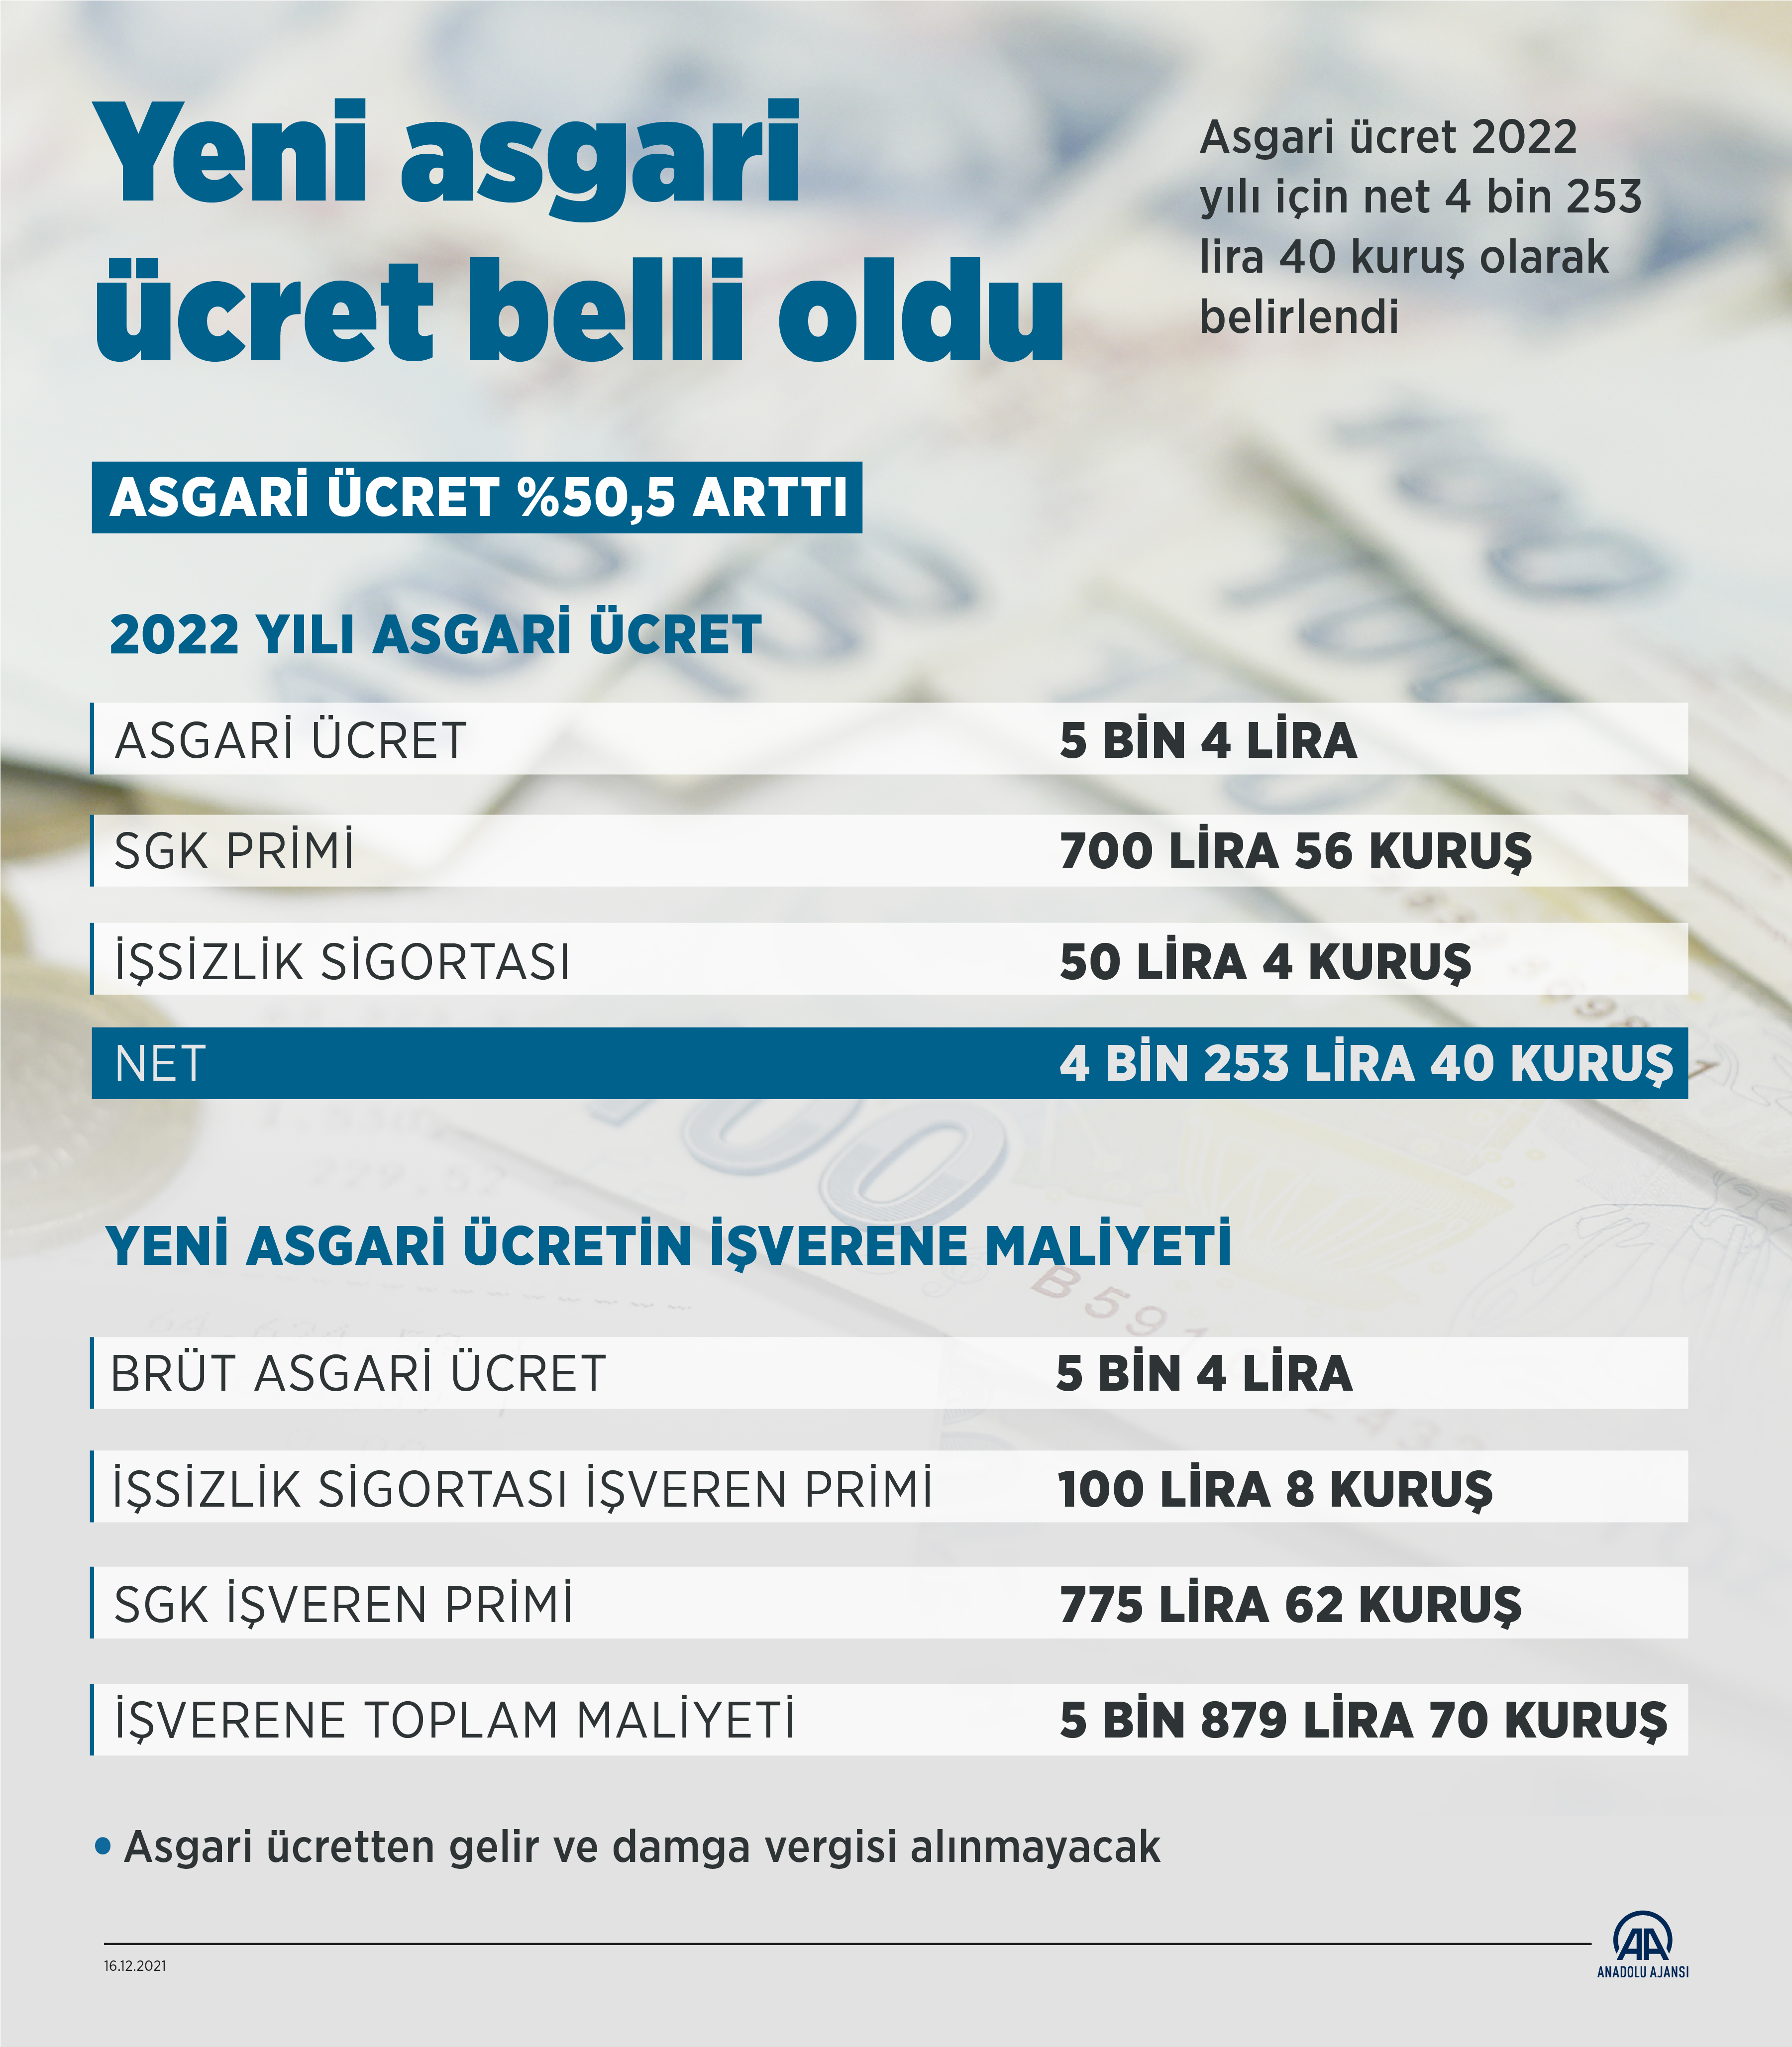 Türk İş Başkanı Ergün Atalay'dan asgari ücret açıklaması: Yılın ortasında iyi bir ücret verilmesi lazım.